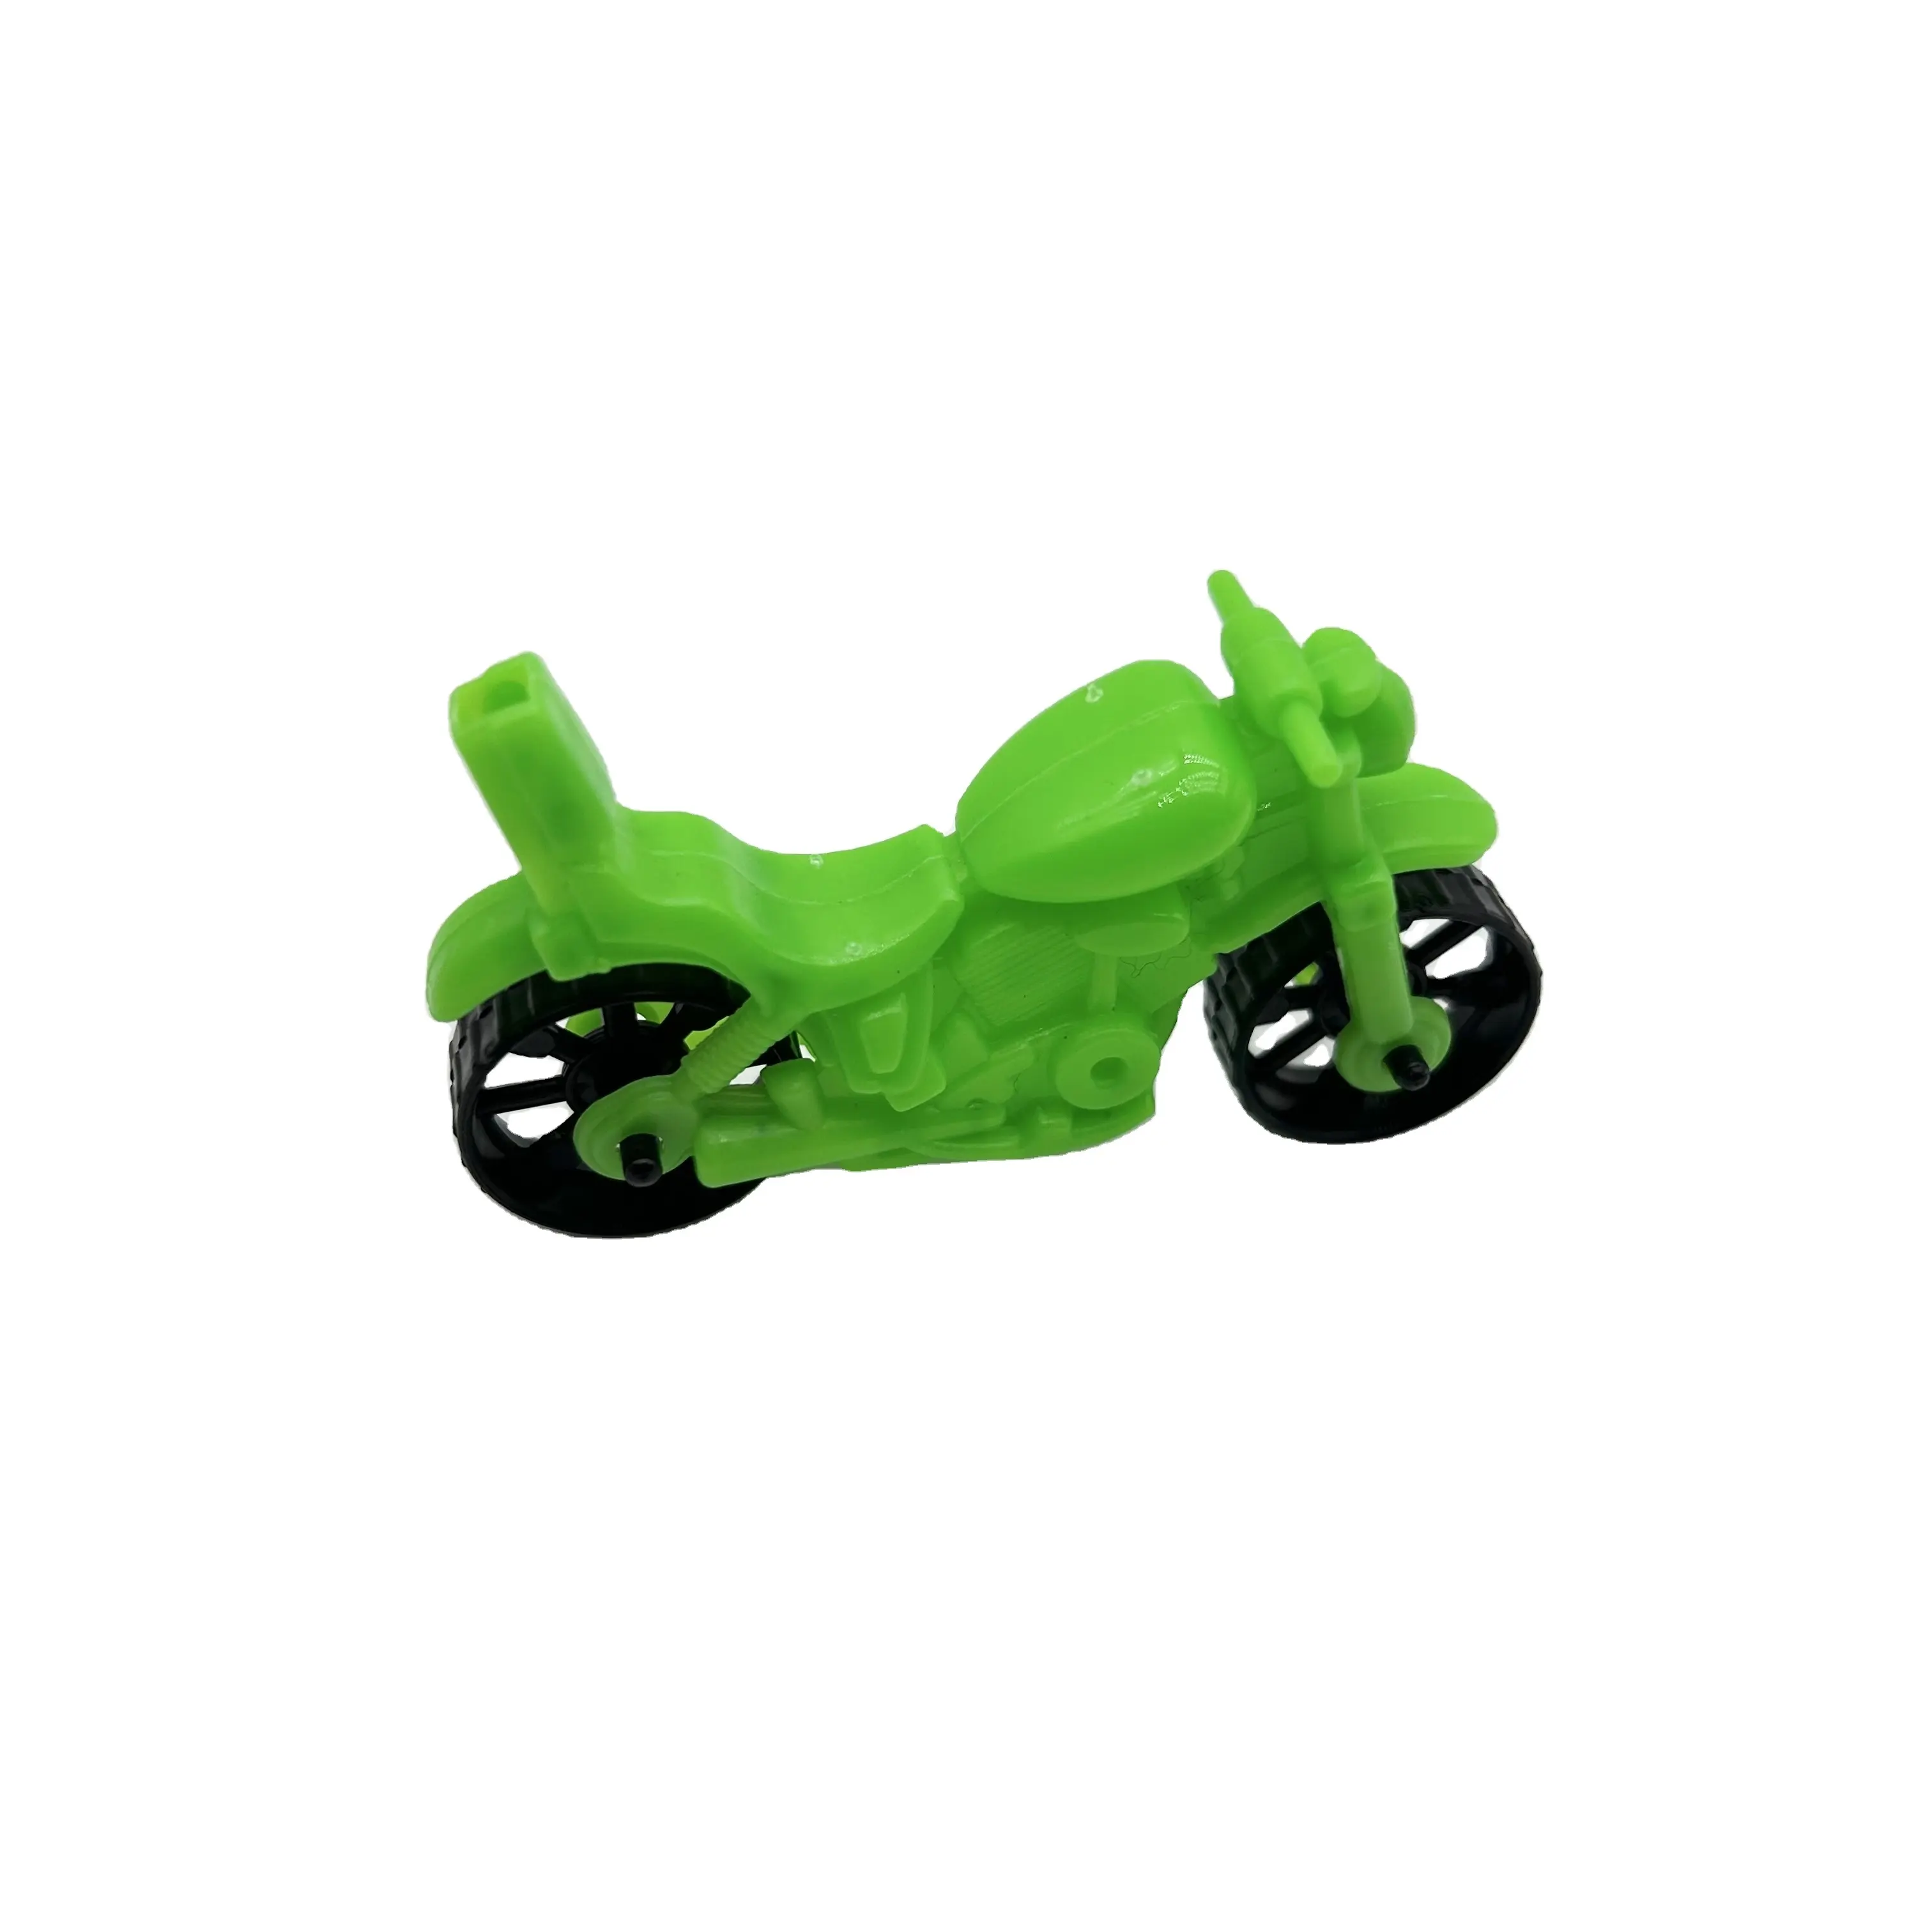 Classico 4 colori caramella giocattolo moto moto Mini moto con fischio regali promozionali per bambini